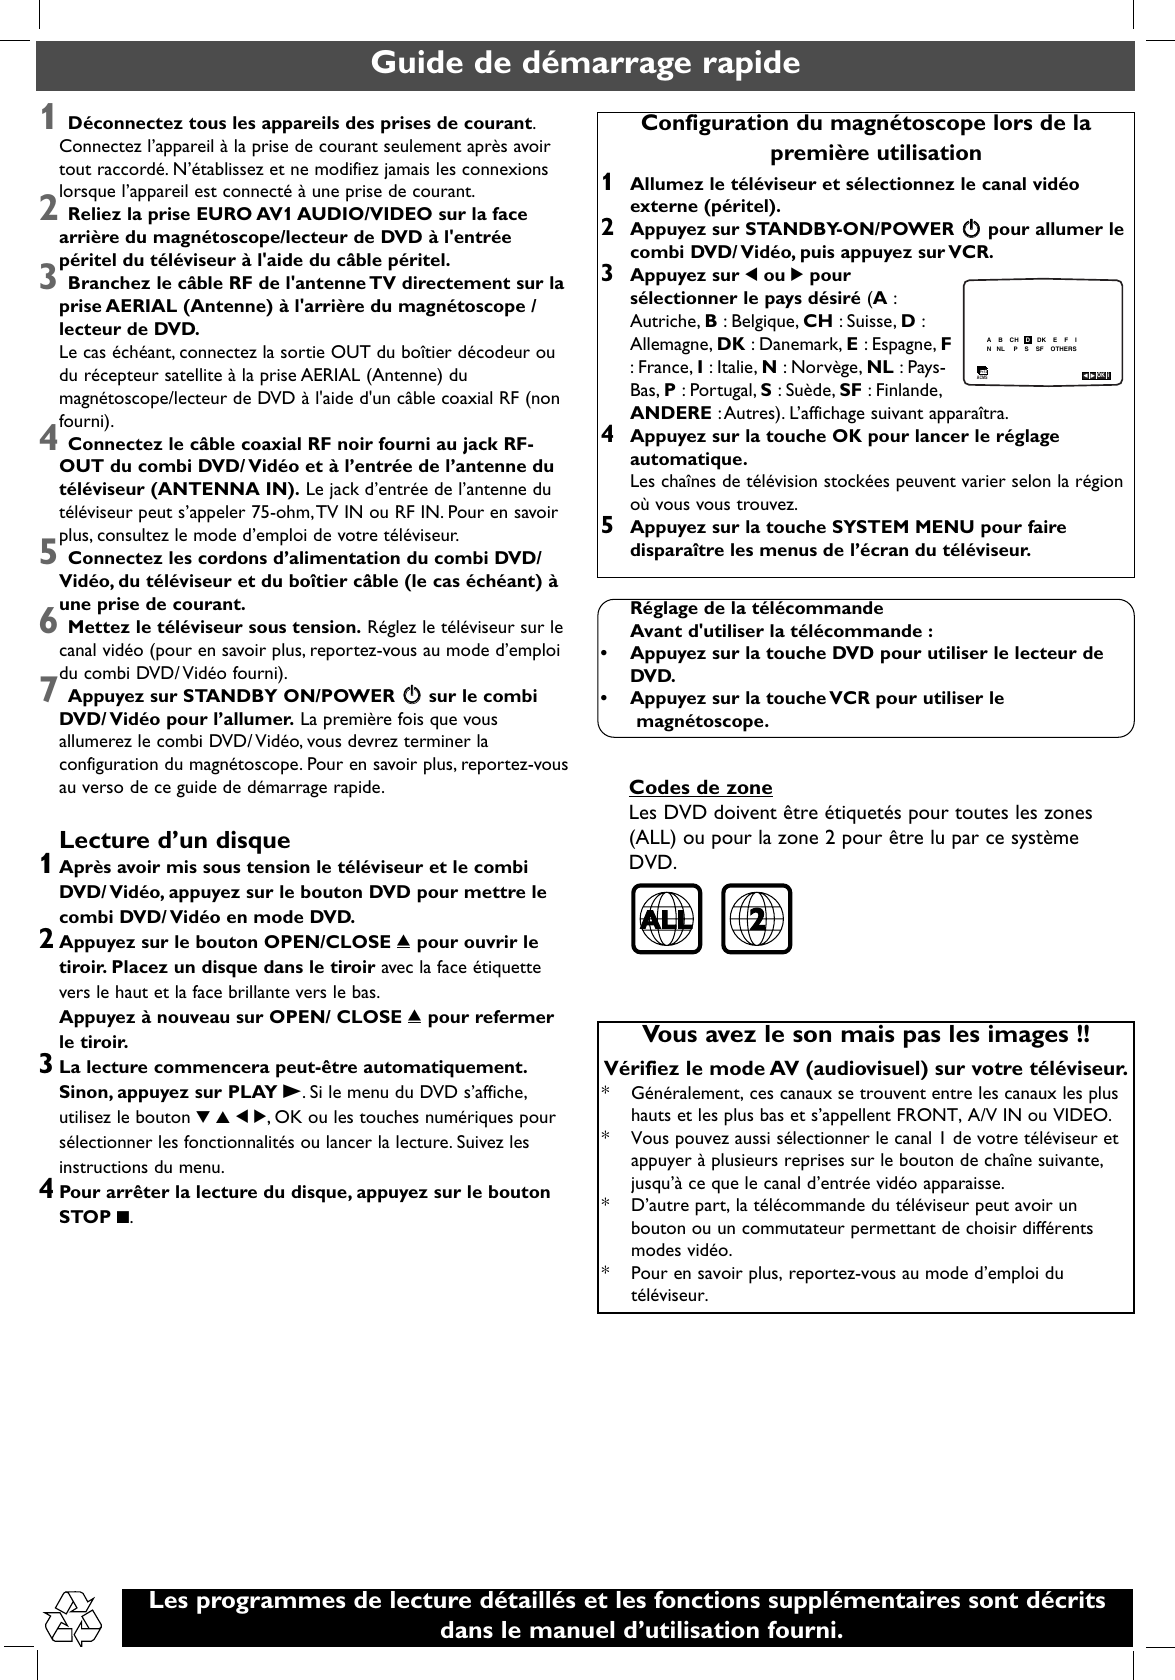 Page 3 of 9 - Philips DVP3055V/01 3055V Qug_00&19 User Manual Quick Start Guide Dvp3055v 01 Qsg Eng